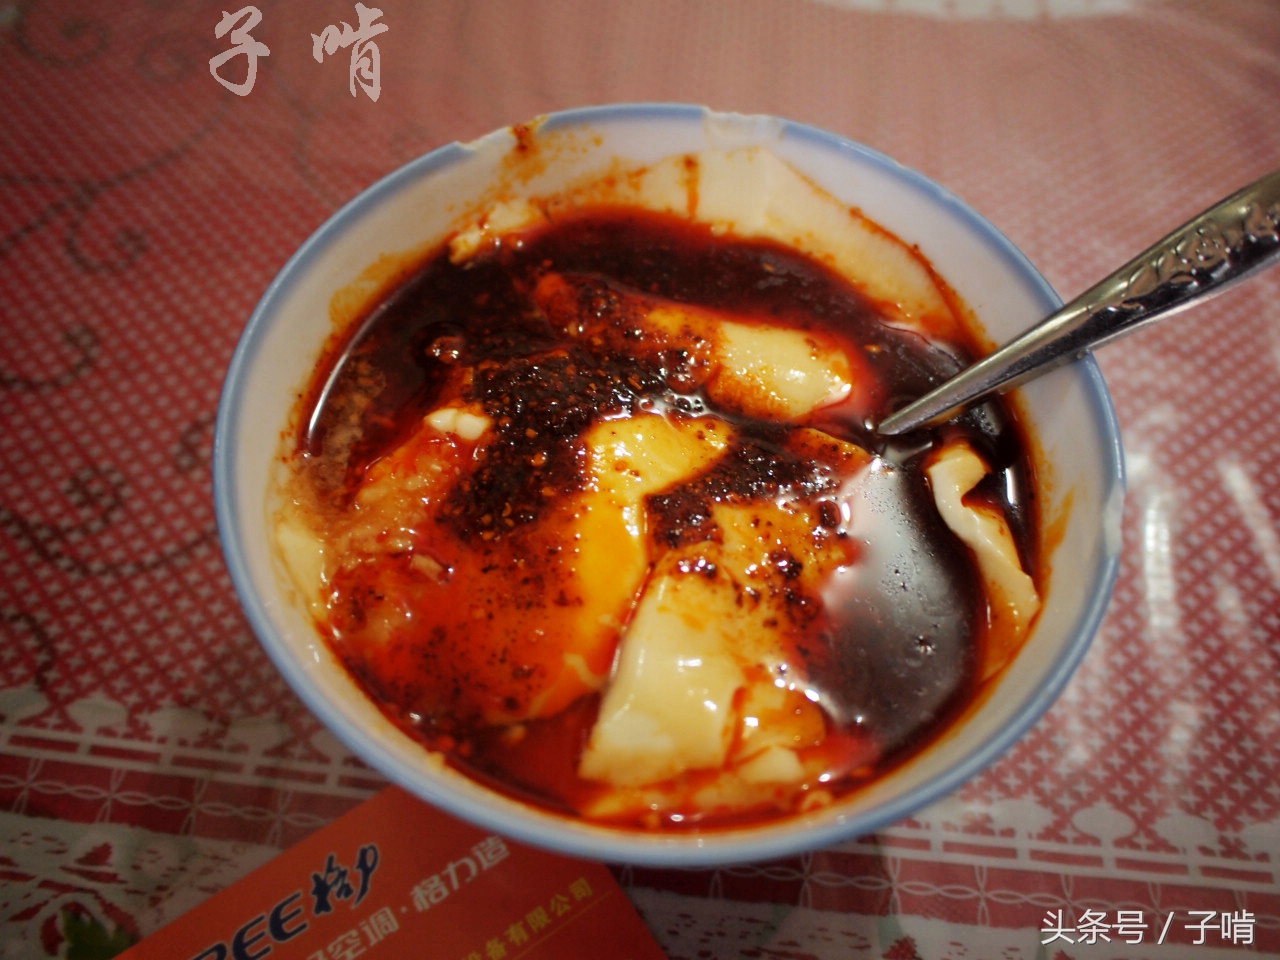 乾县吃豆腐脑满满的辣椒特别香,小菜5元一盘子想吃多少装多少